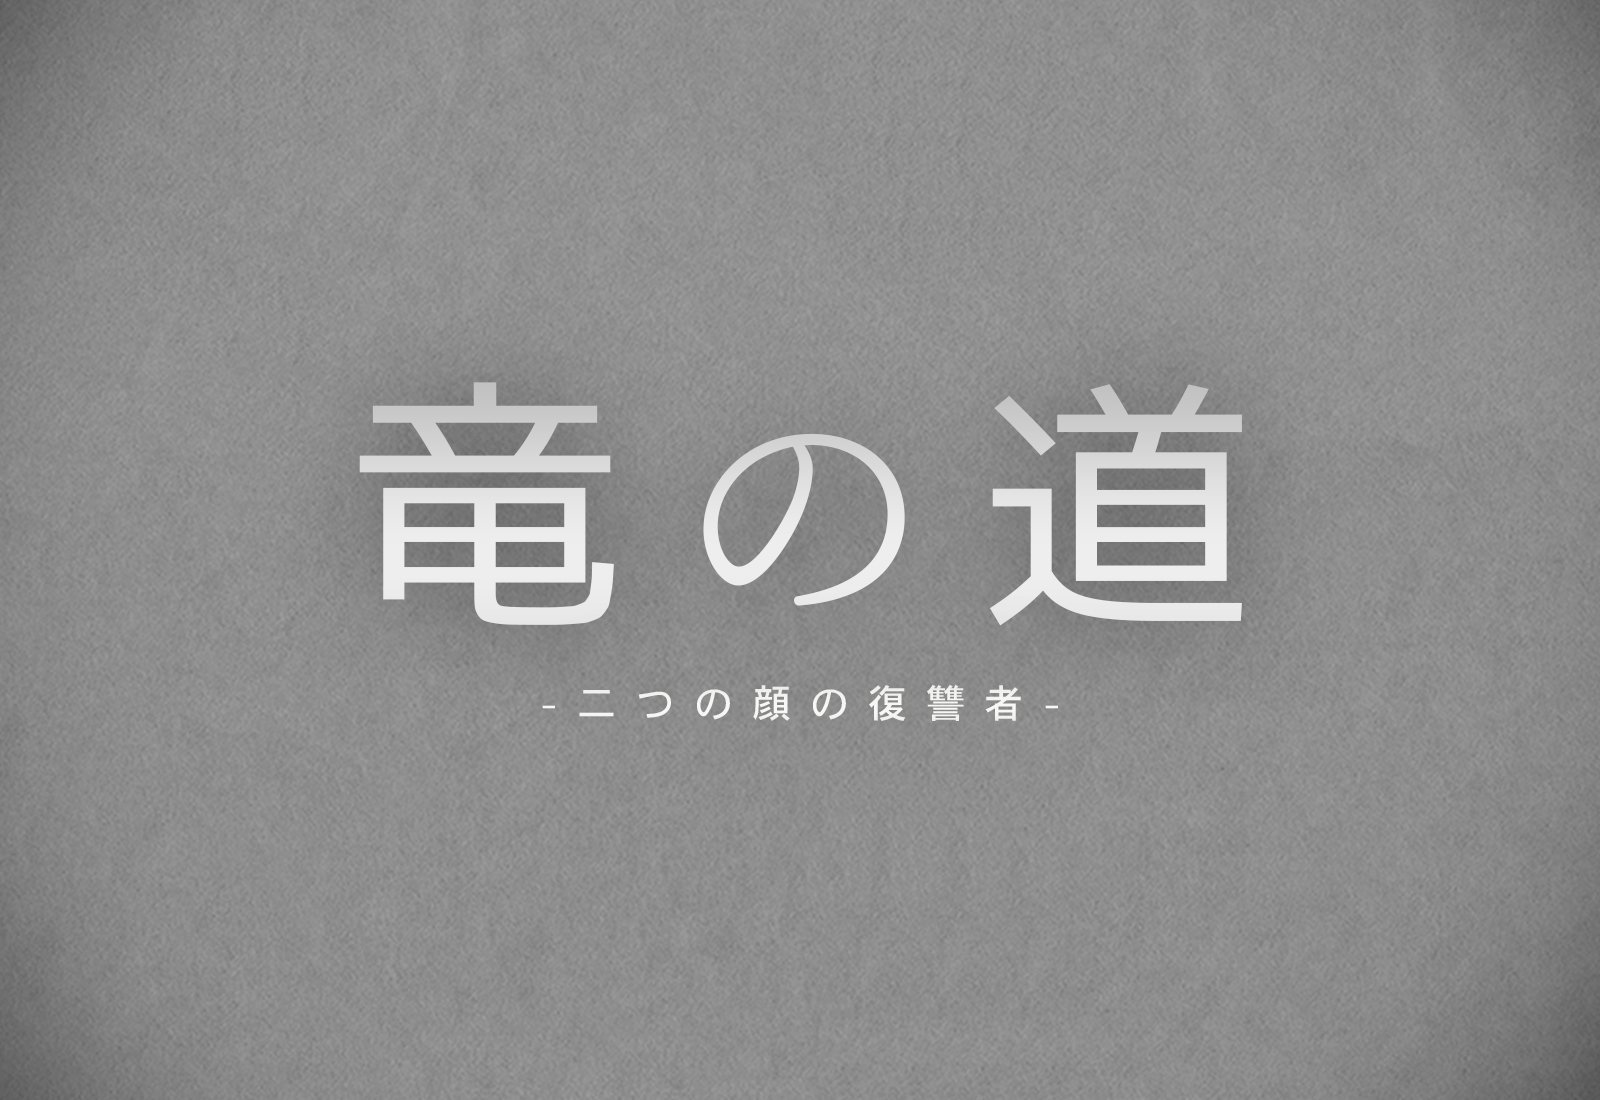 竜の道エンディング主題歌はSEKAI NO OWARIのumbrella - ドラマネタバレ